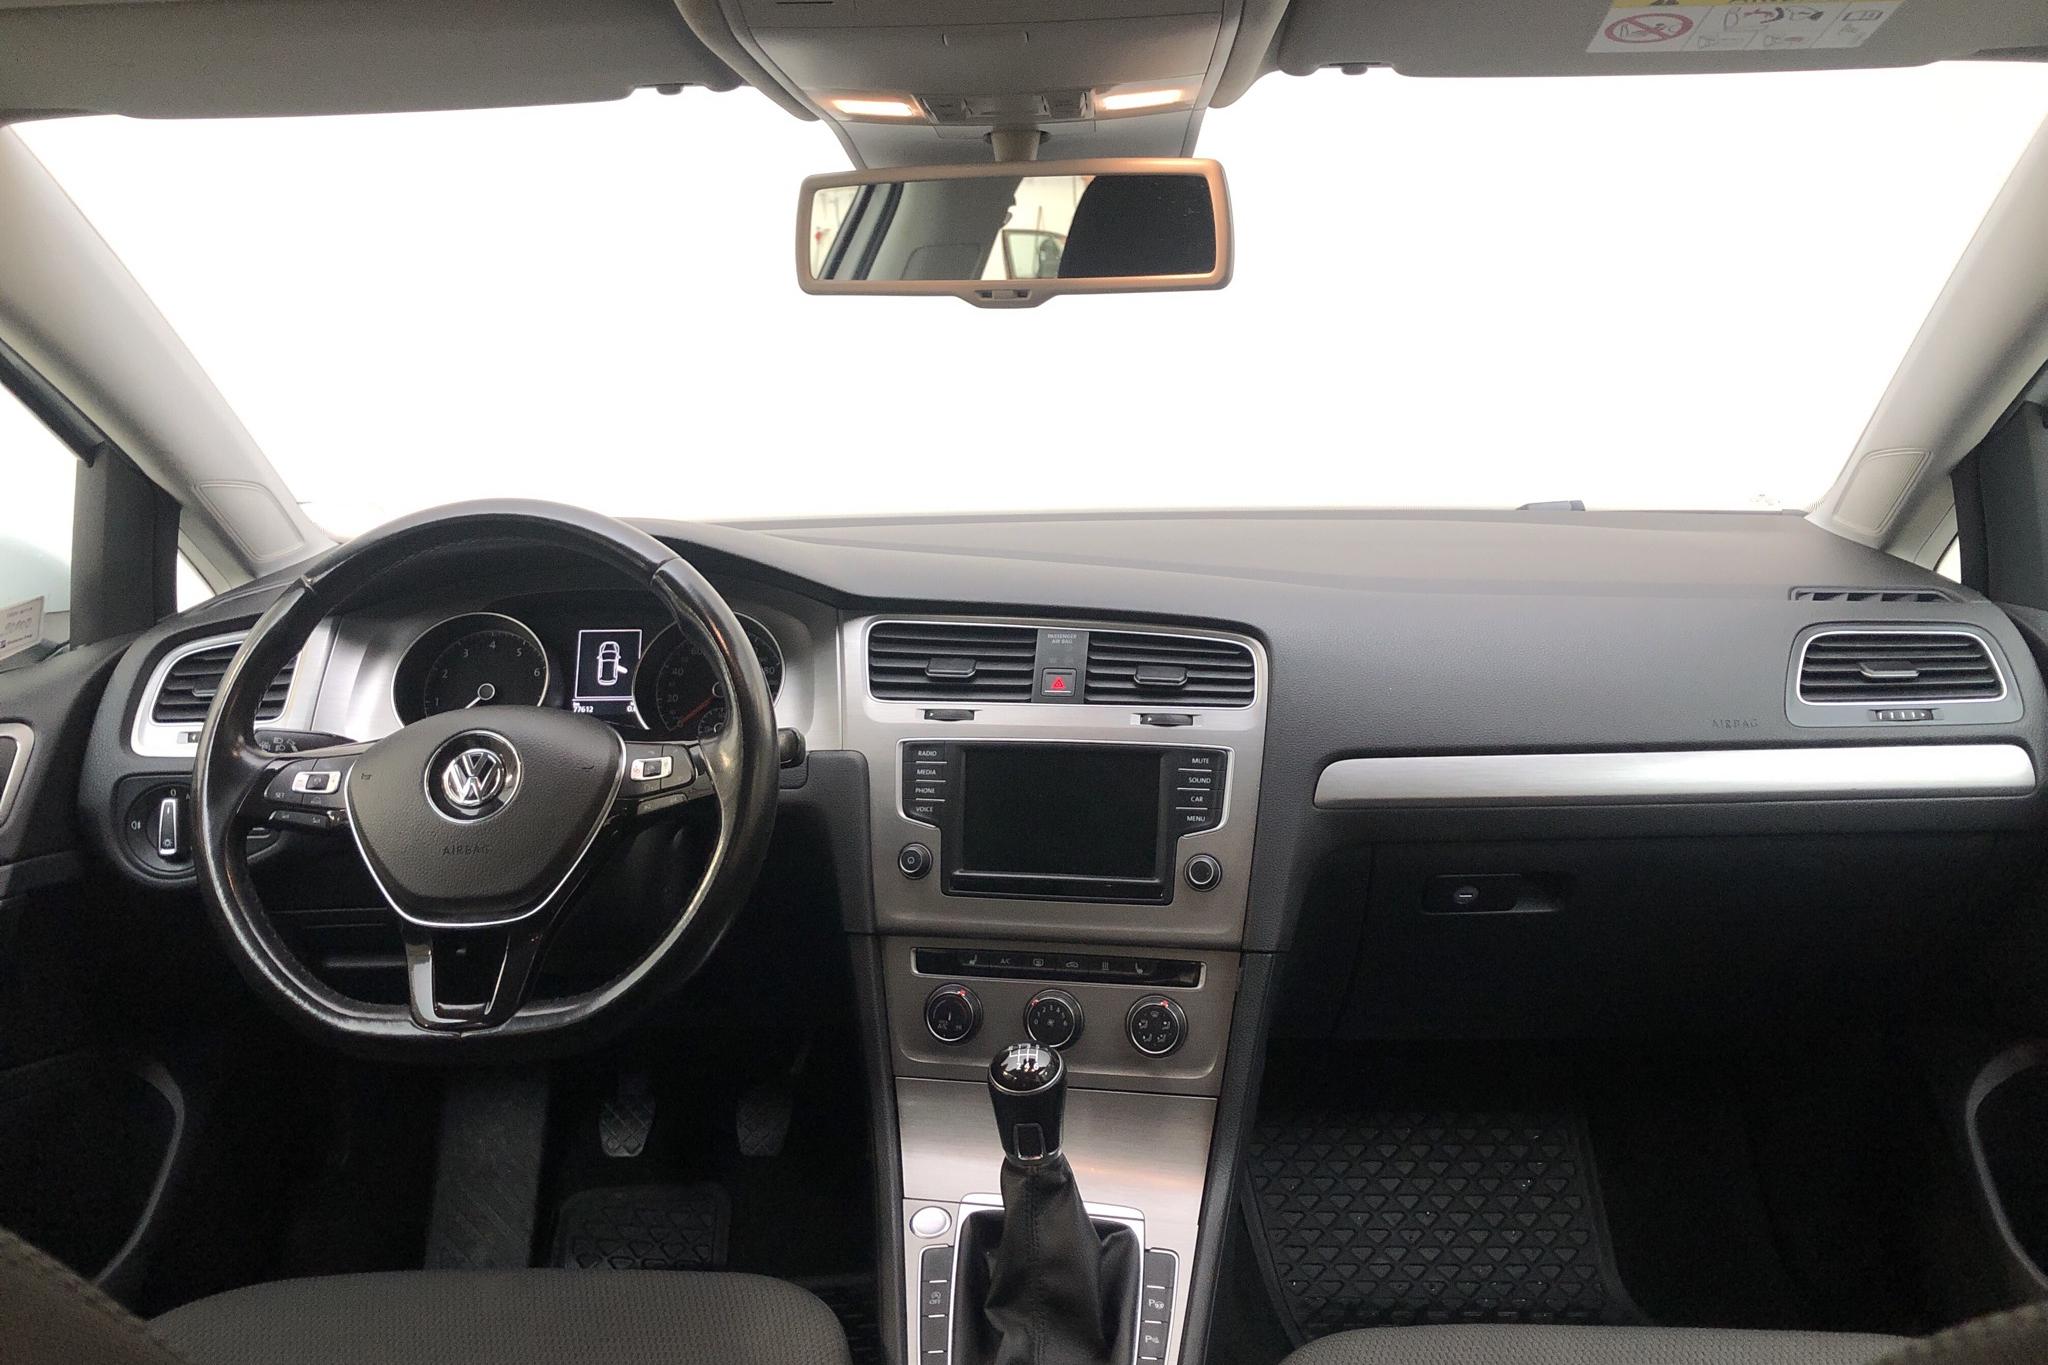 VW Golf VII 1.4 TGI 5dr (110hk) - 77 610 km - Manual - white - 2016